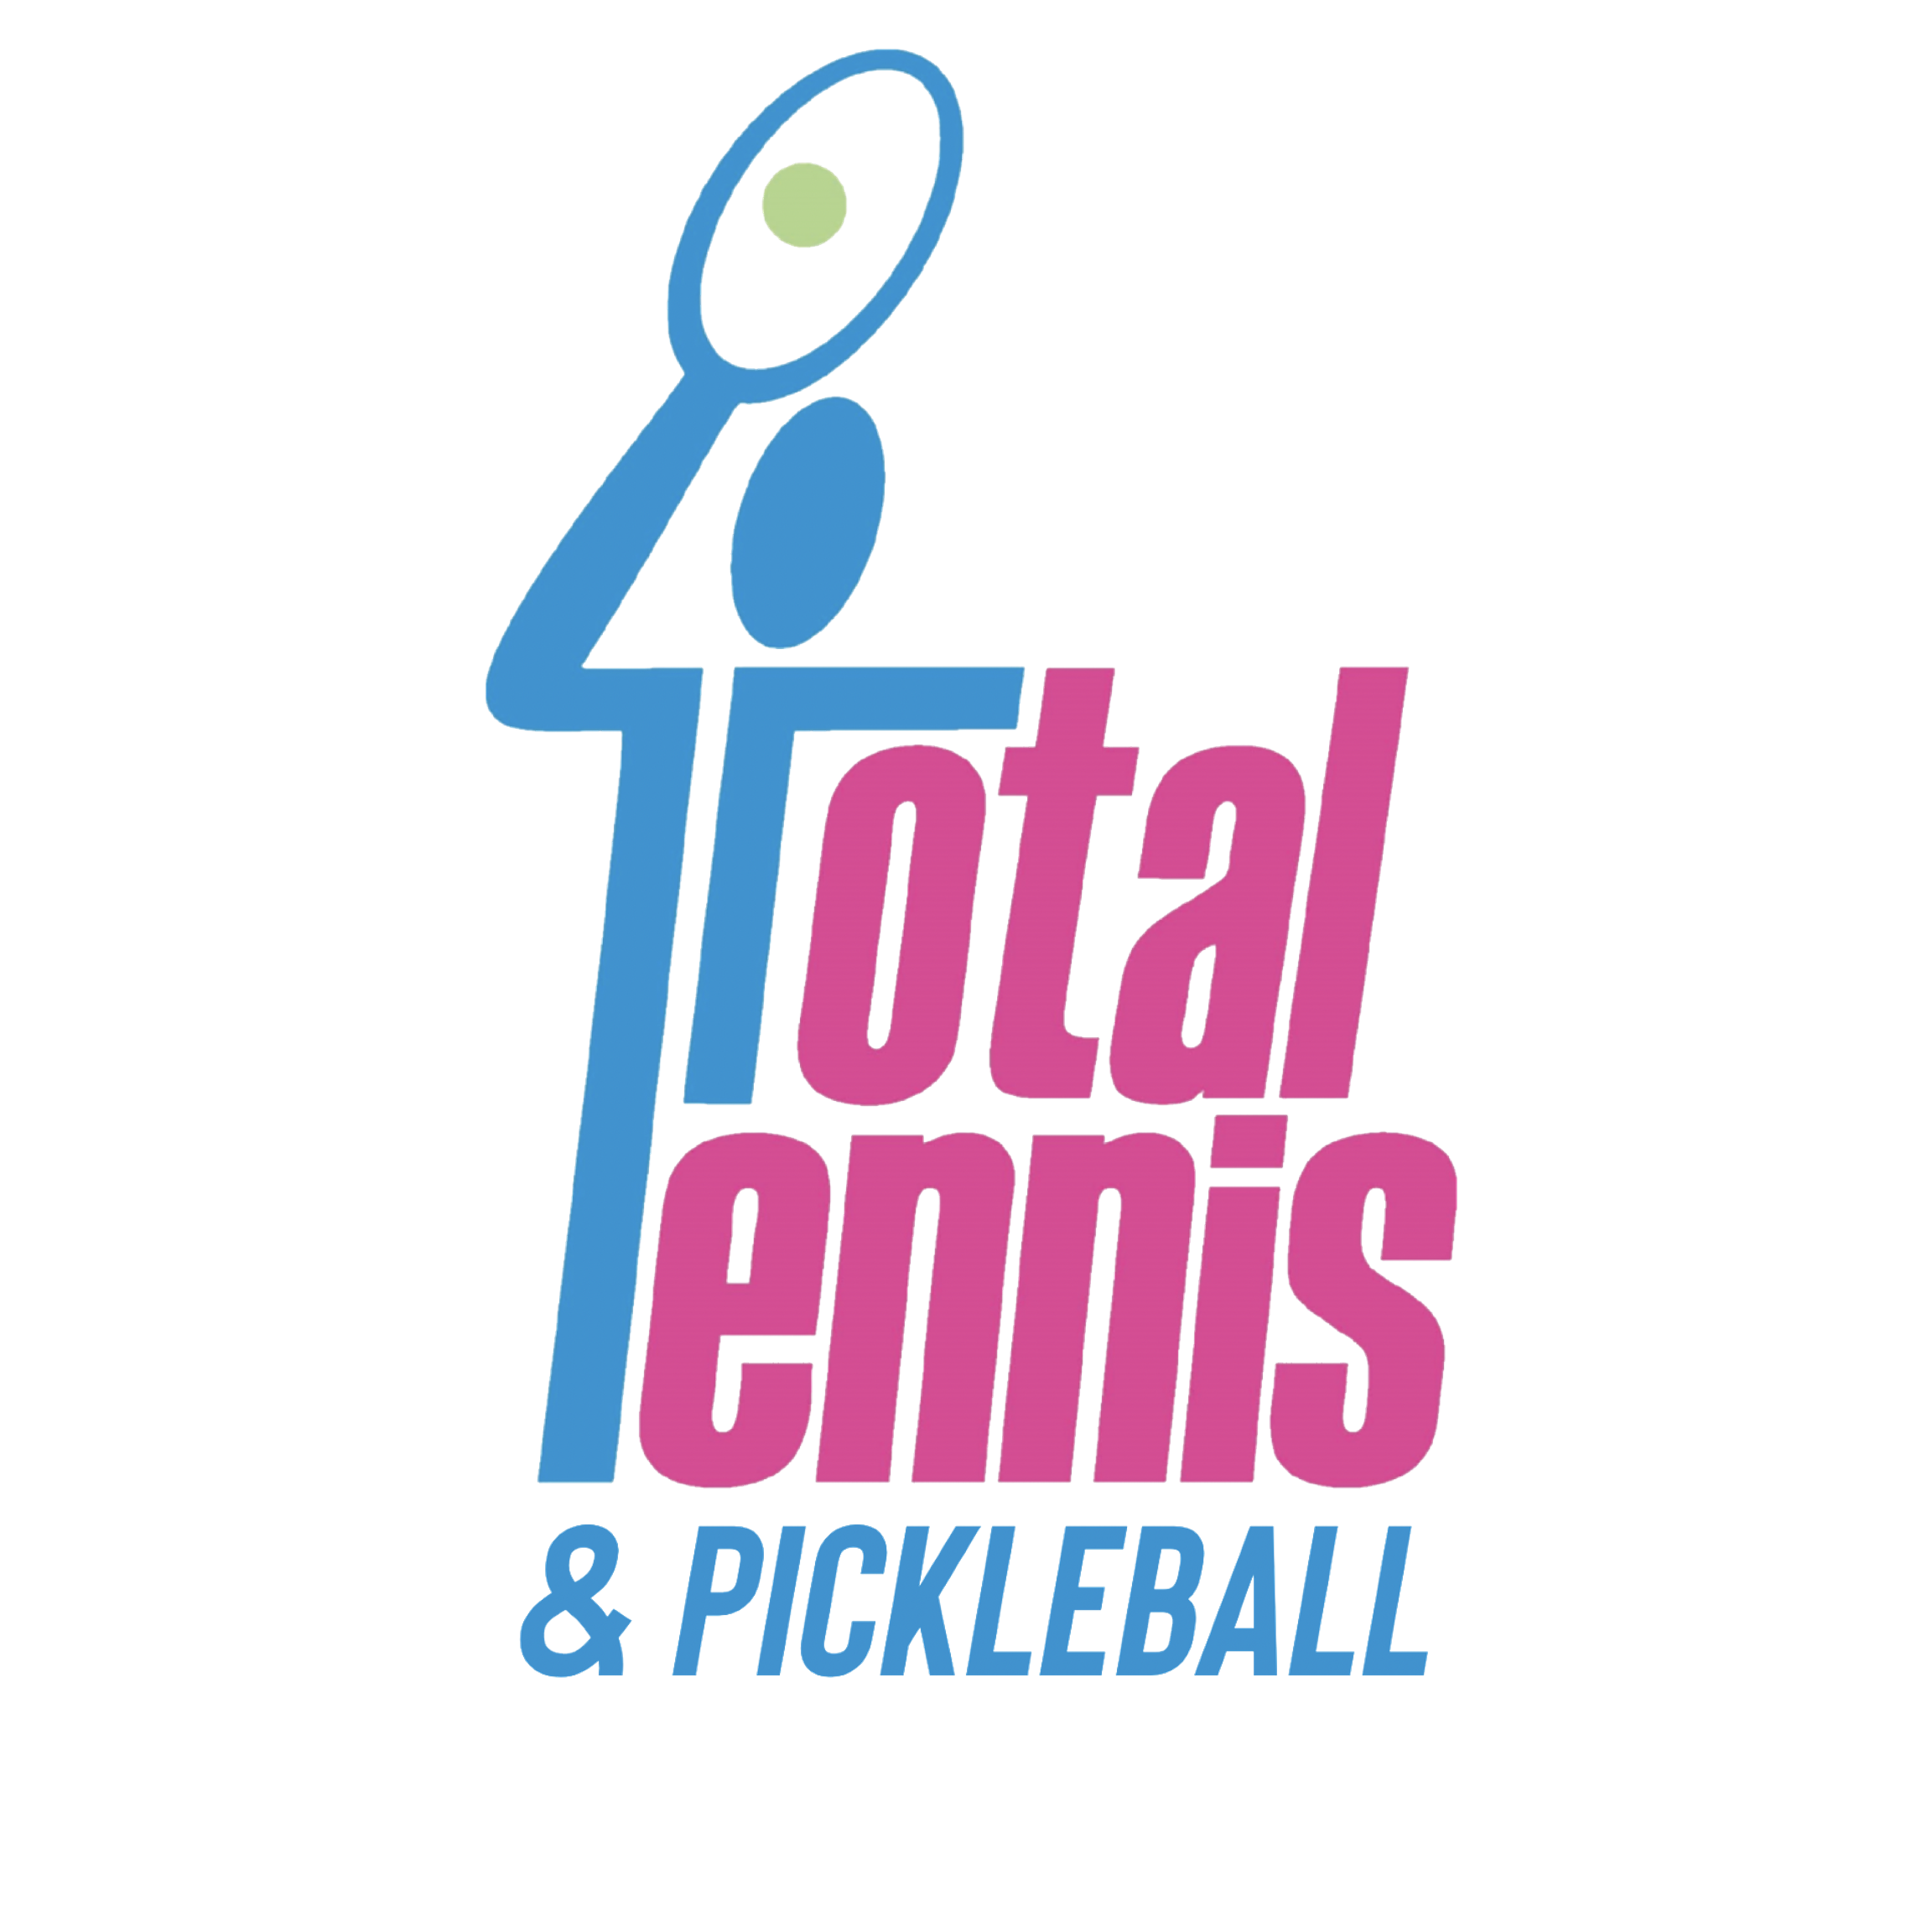 Total Tennis